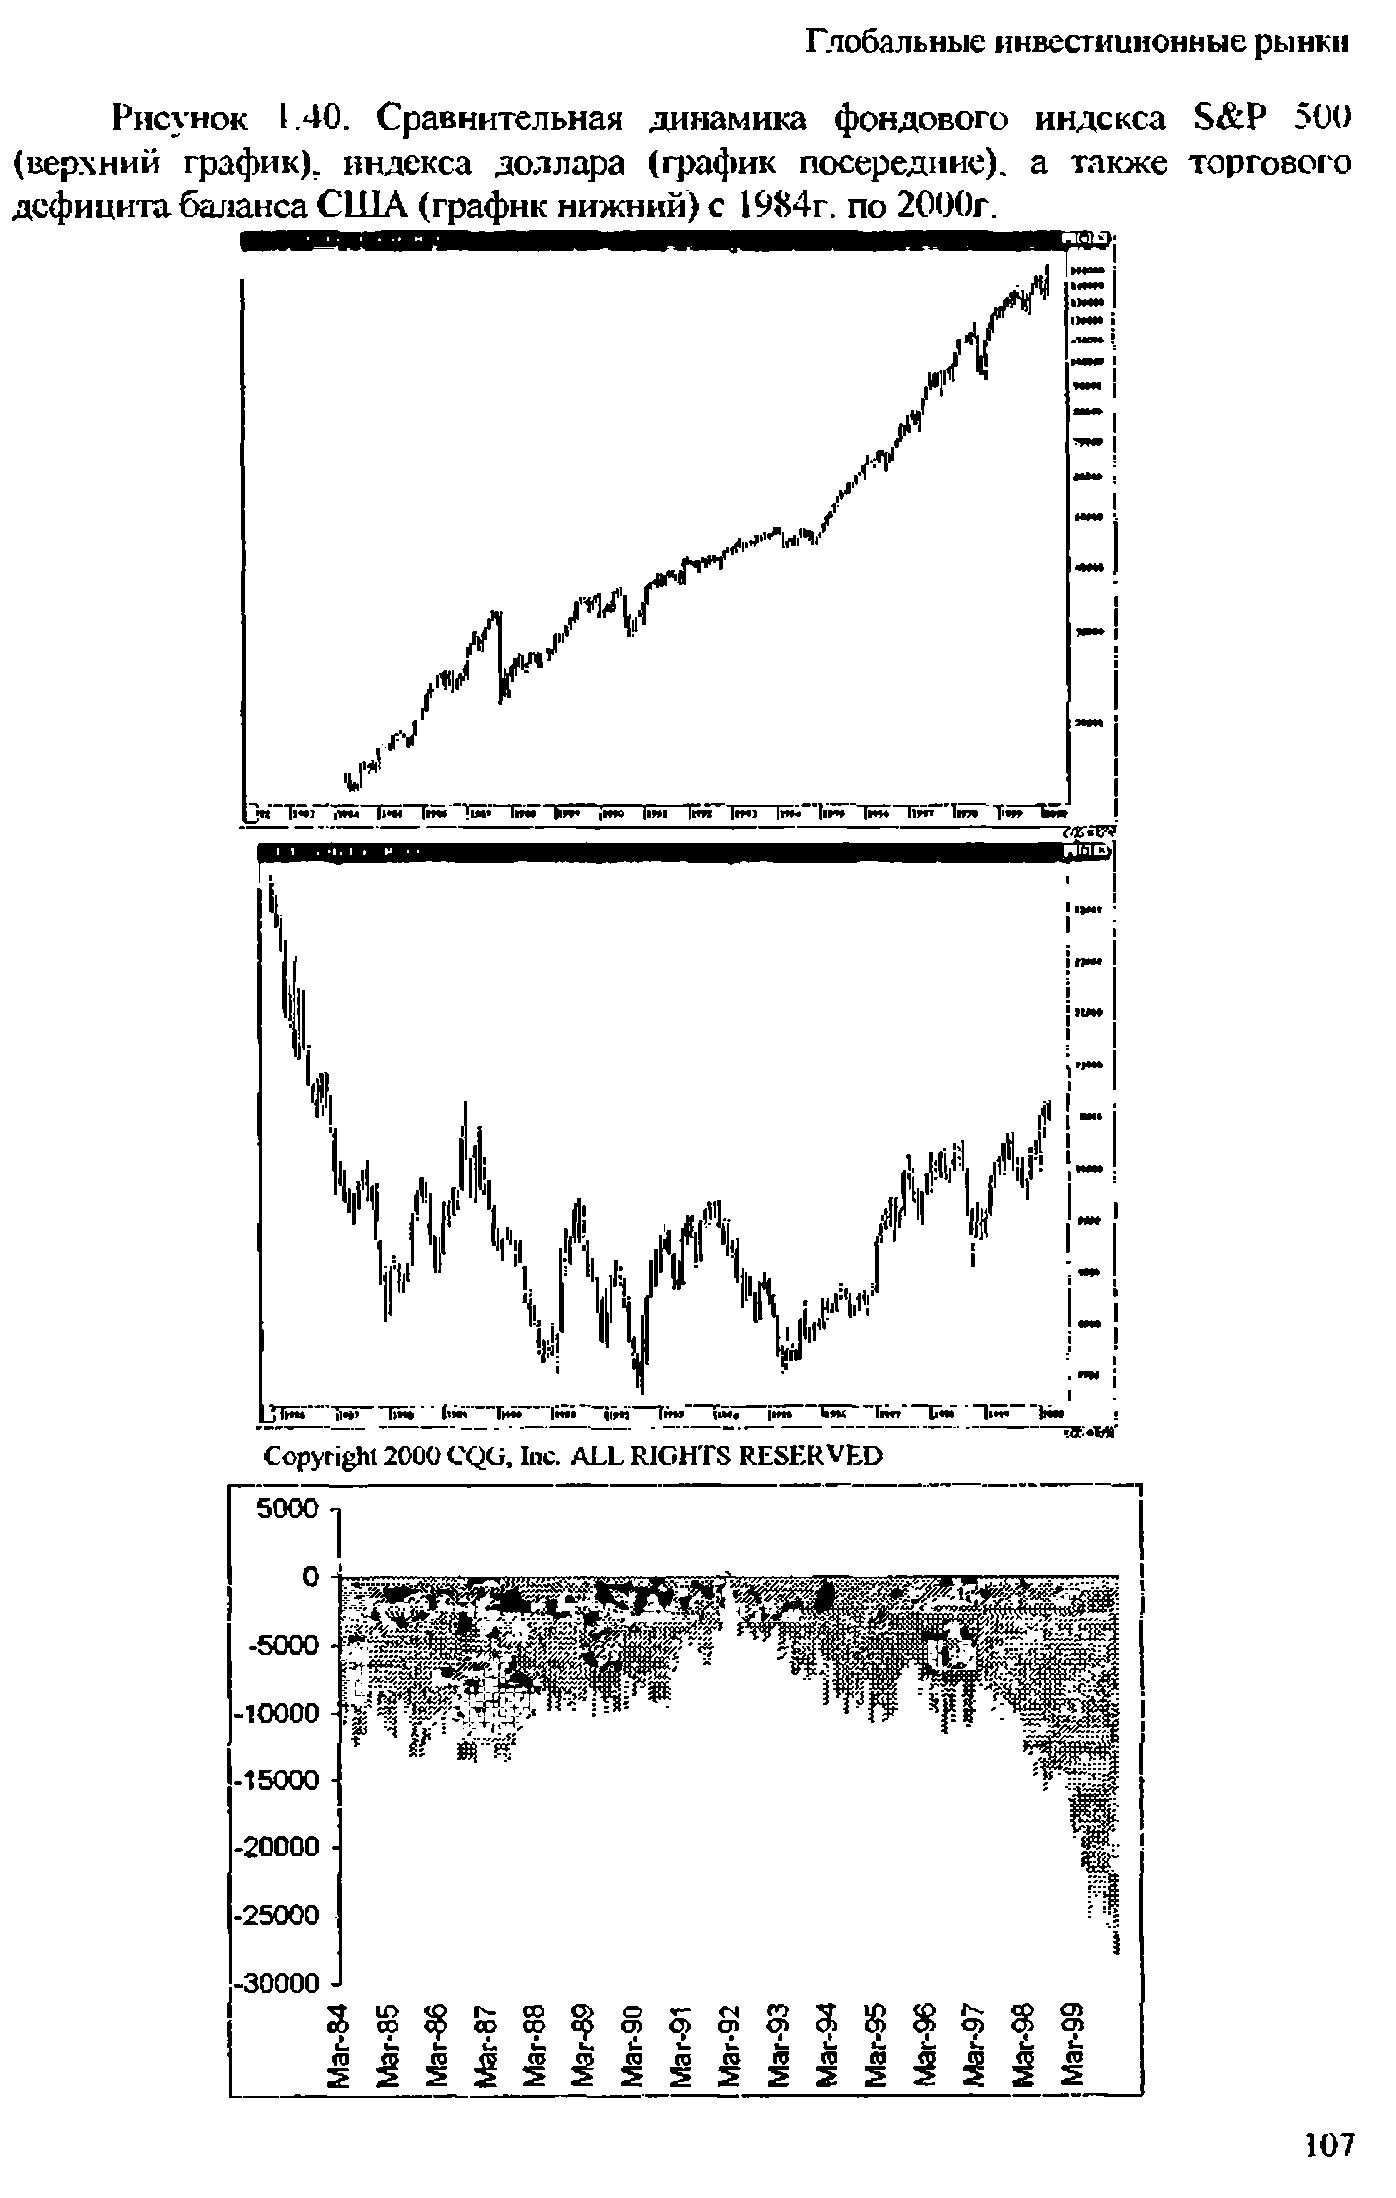 Рисунок 1.40. Сравнительная динамика <a href="/info/4865">фондового индекса</a> S P 500 (вер ний график), индекса доллара (график посередине), а также торгового дефицита баланса США (график нижний) с 1984г. по 2000г.
